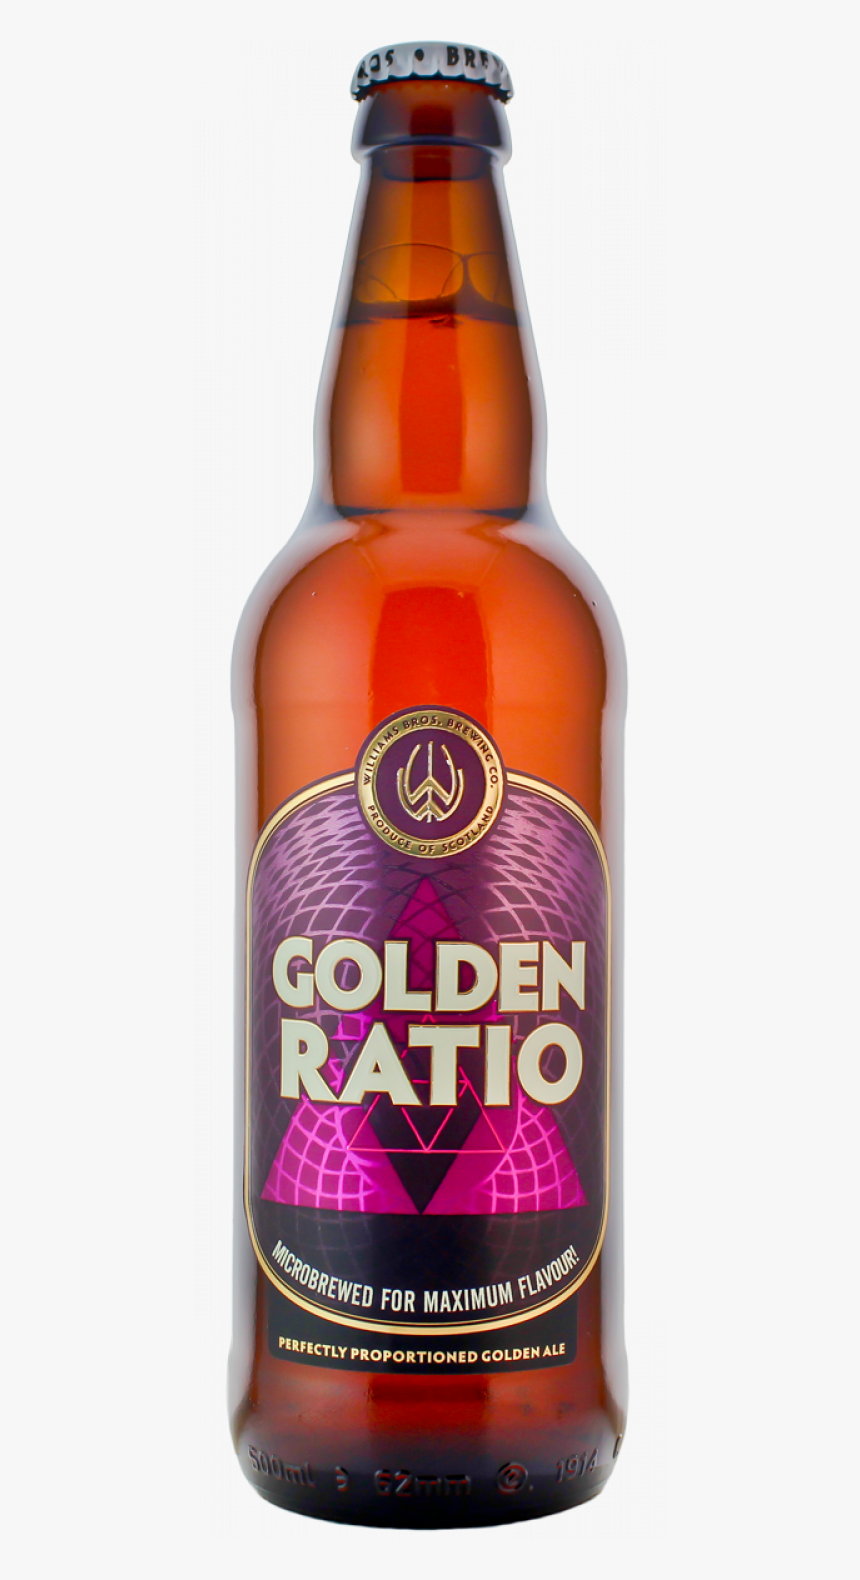 Golden Ratio - Golden Ratio Beer, HD Png Download, Free Download